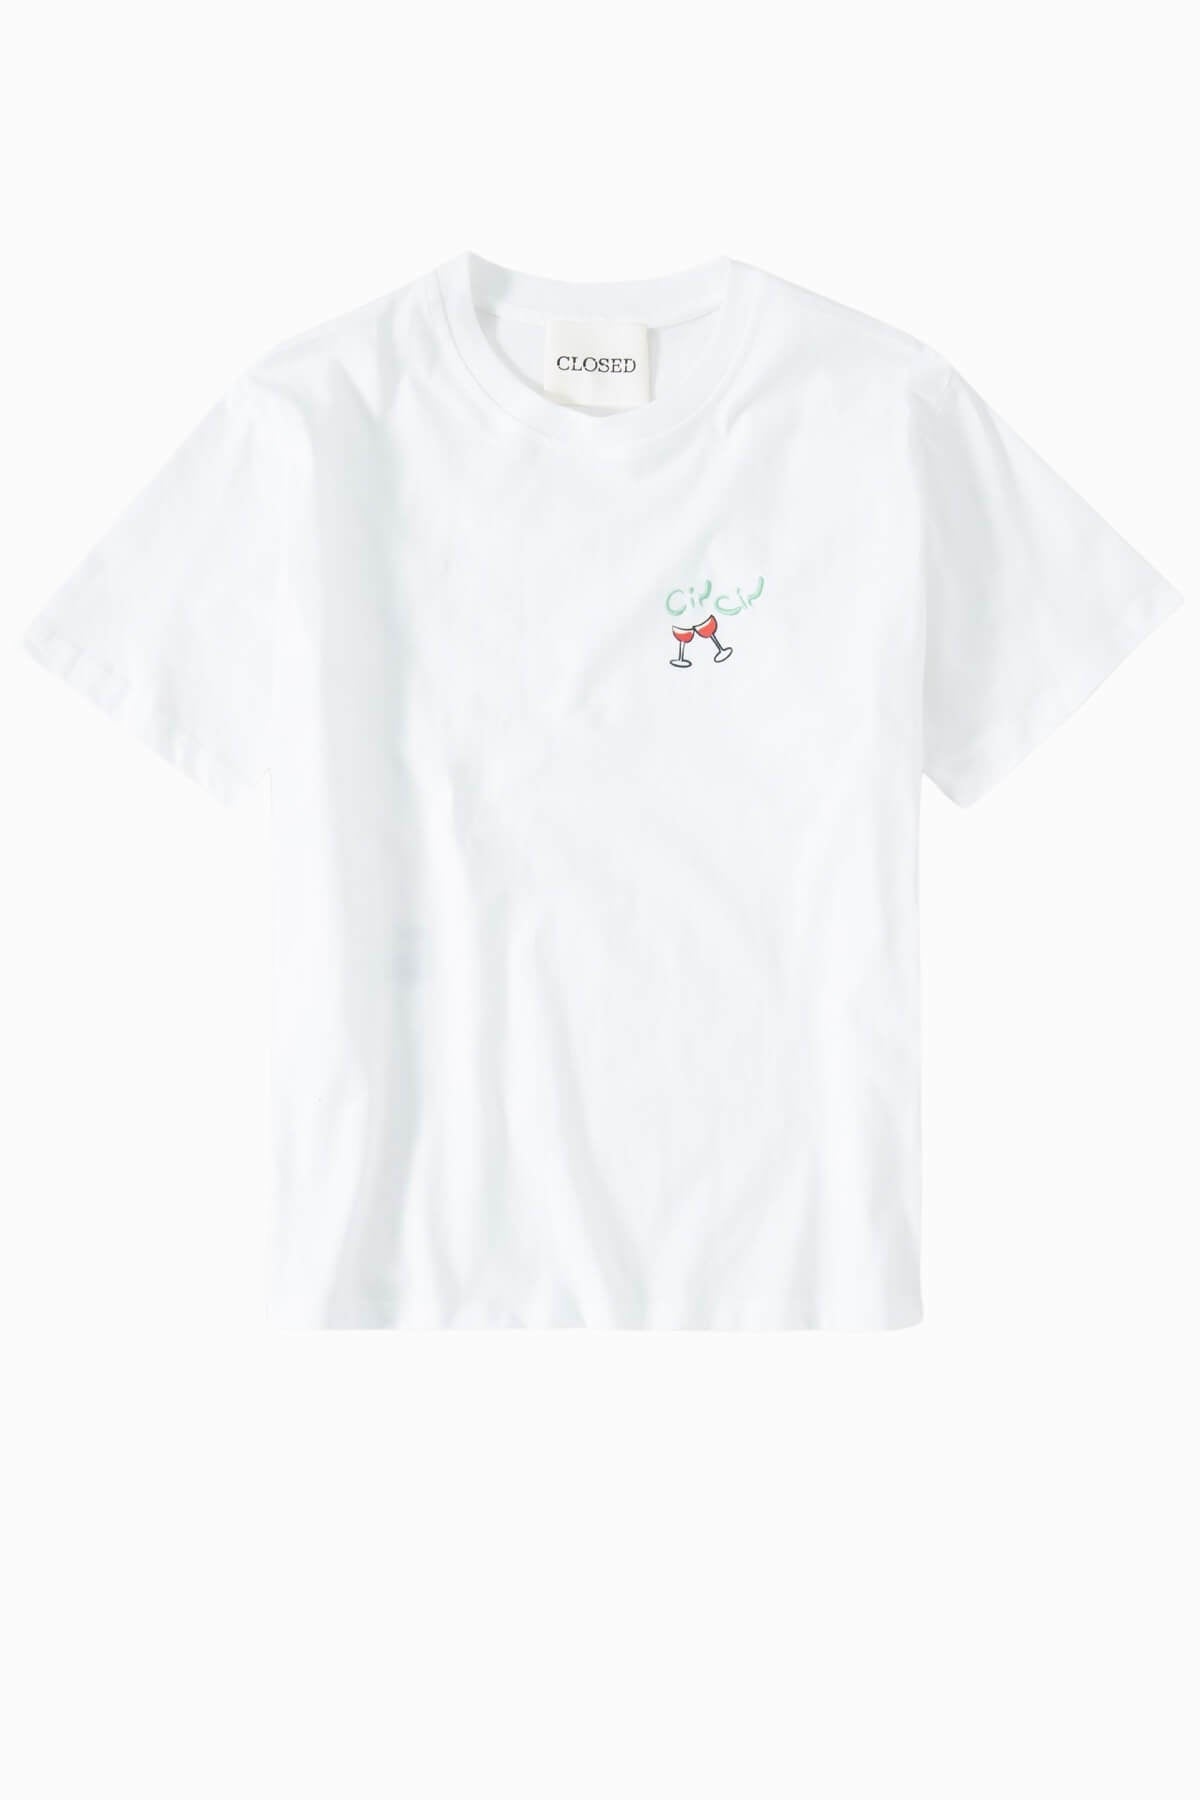 Closed Cin Cin Printed T-Shirt - White